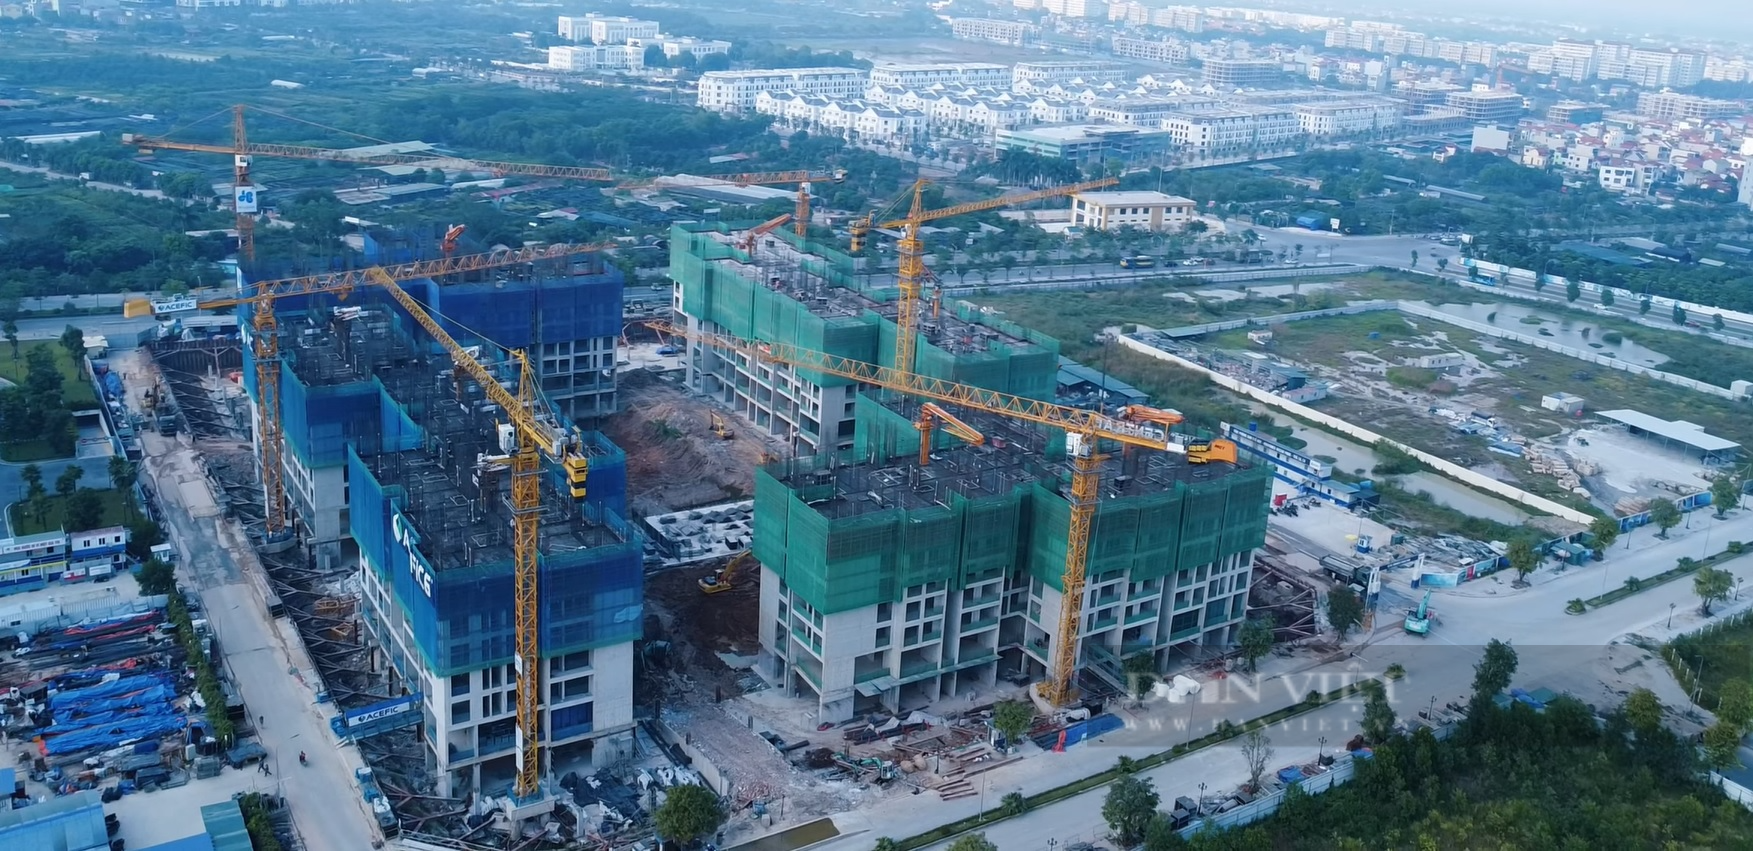 Thị trường bất động sản phía đông Hà Nội hưởng lợi từ các dự án đường Vành đai  - Ảnh 2.